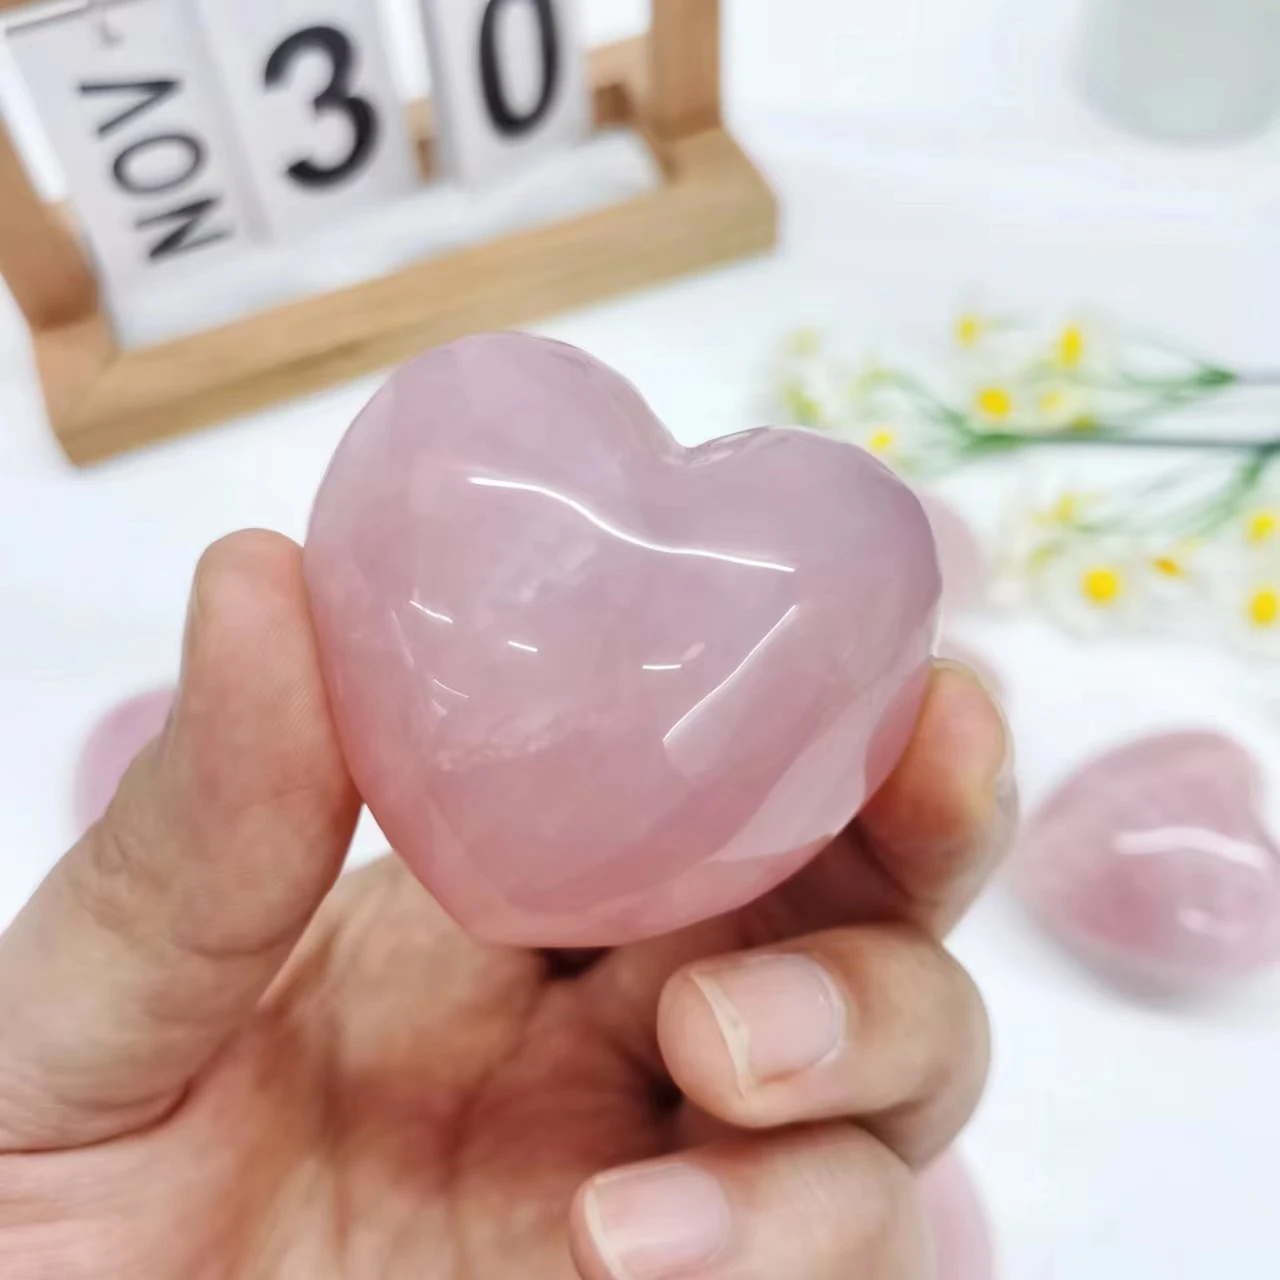 

Big Healing Heart Shaped Crystals Natural Quartz Gem stone Rose Quartz Crystals Hearts for Home Decor